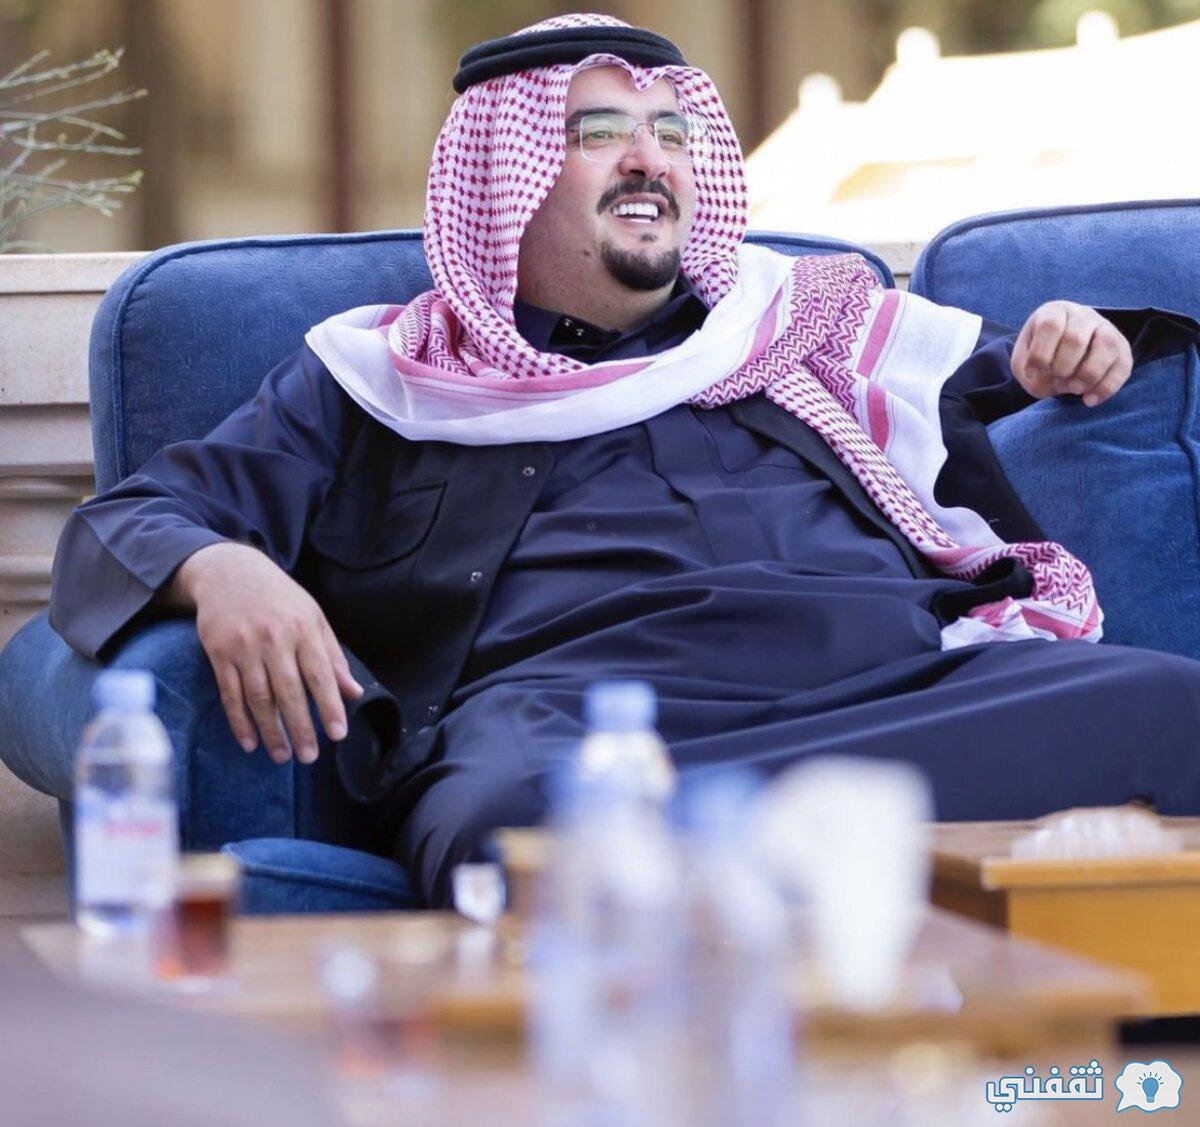 واتساب الأمير عبد العزيز بن فهد